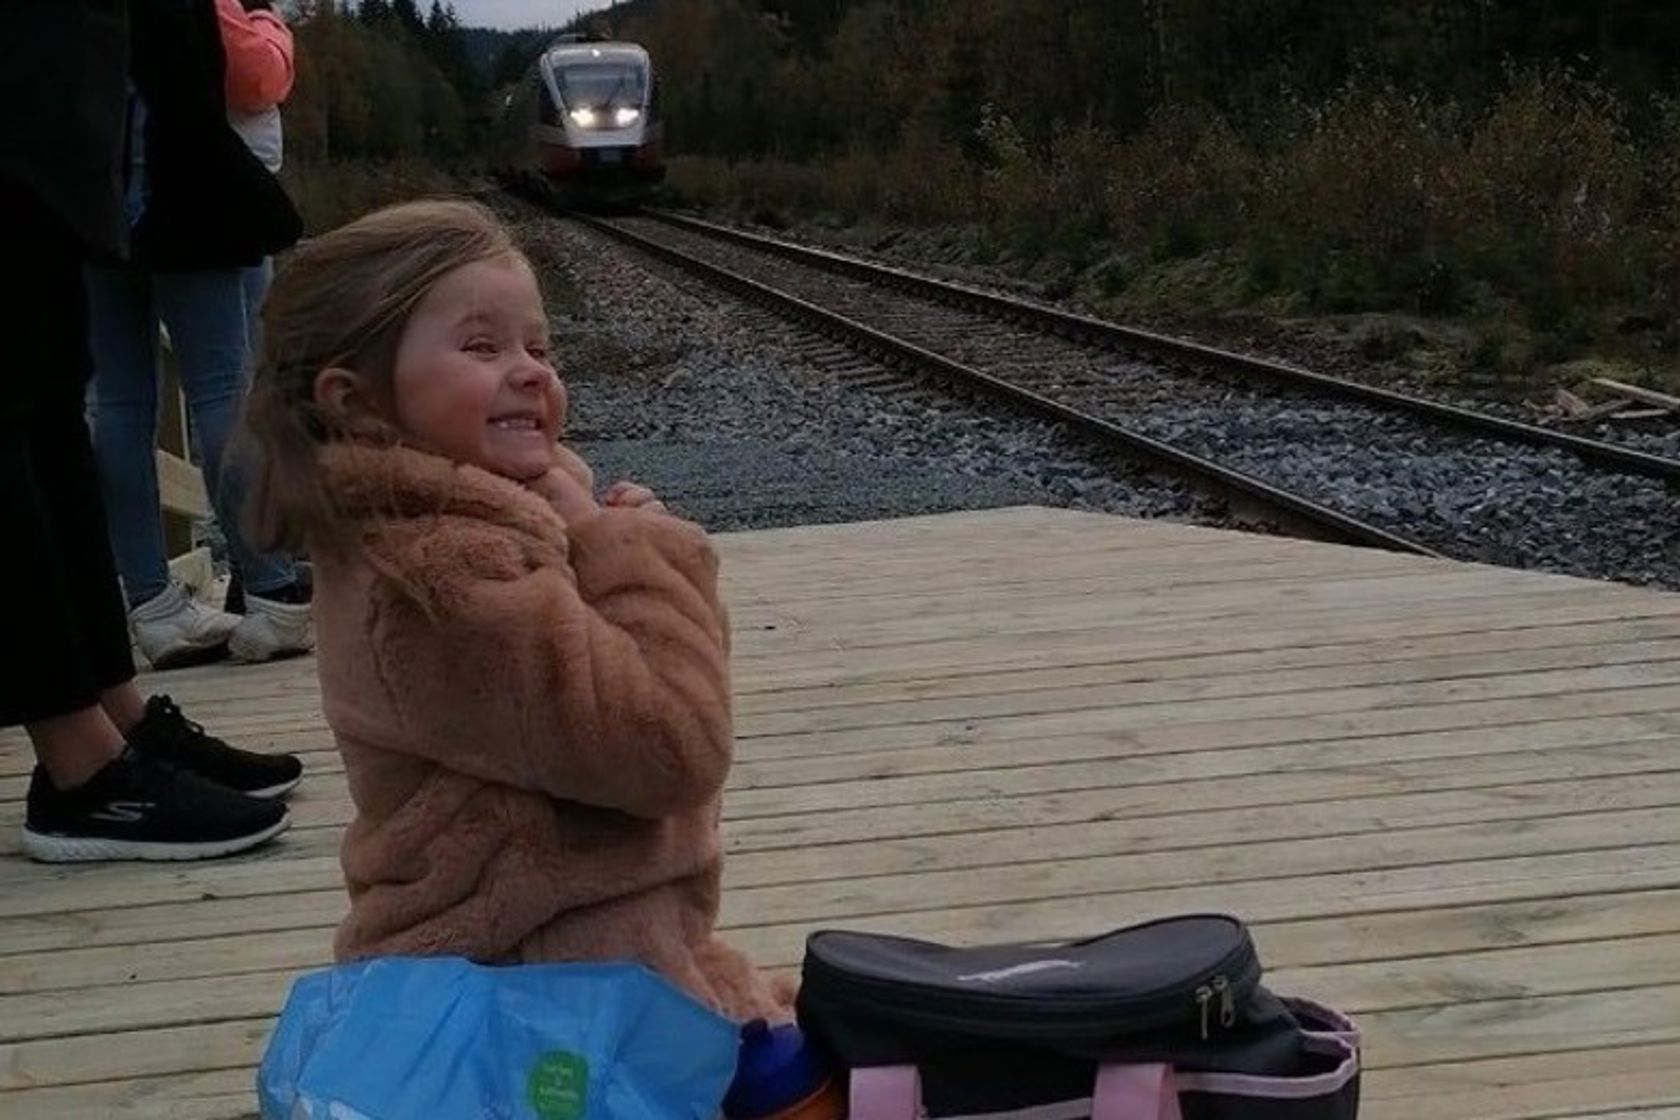 Ei lita jente sitter på en jernbaneplattform og venter på toget. Hun smiler og gleder seg. 